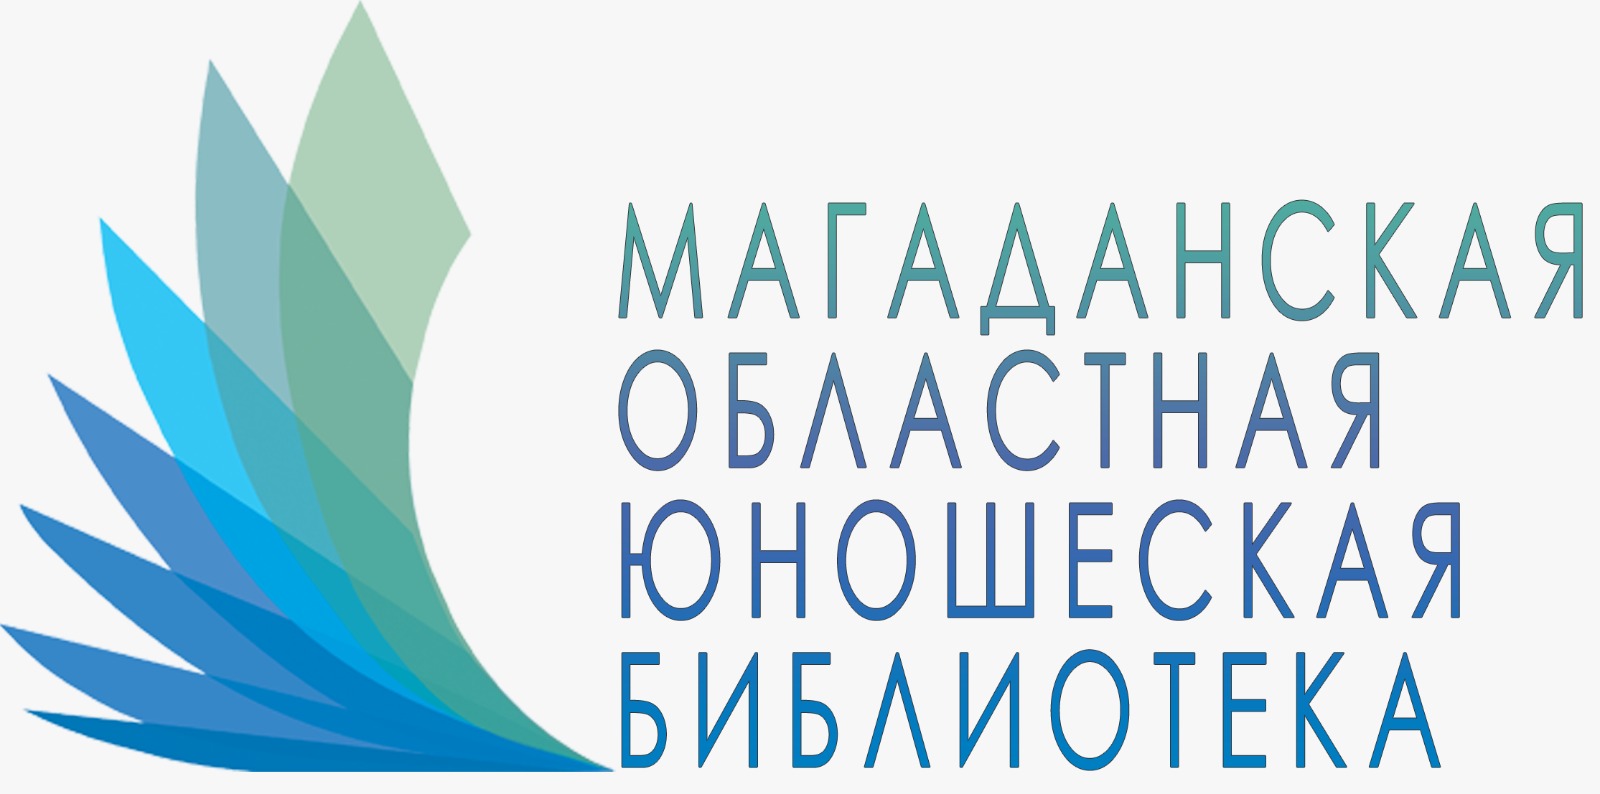 Логотип ОГБУК "Магаданская областная юношеская библиотека"